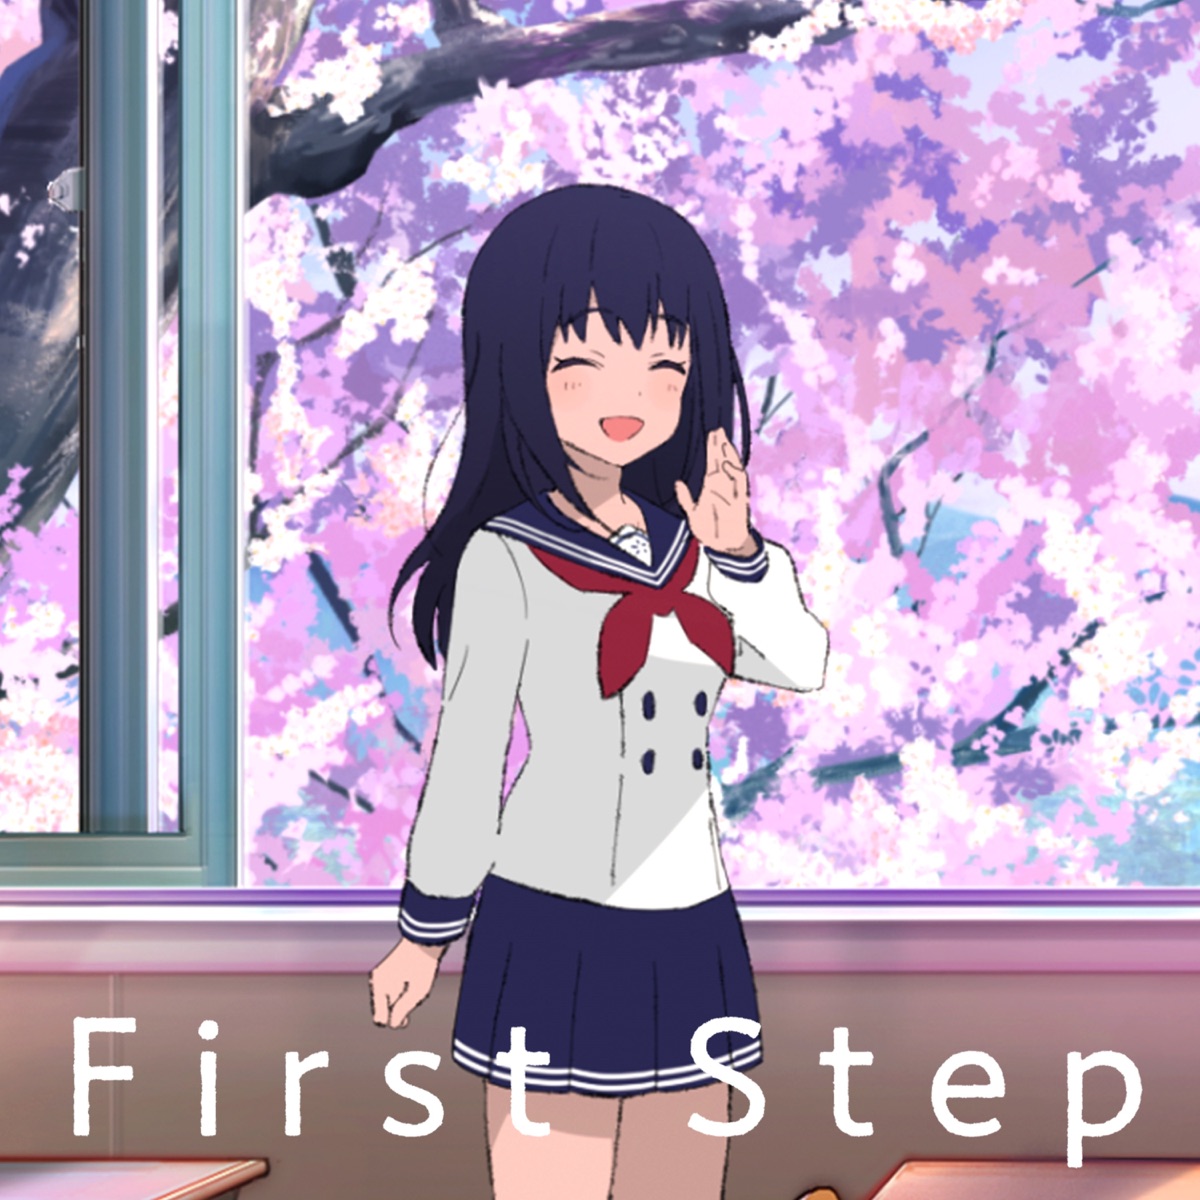 『長瀬麻奈(神田沙也加) - First Step 歌詞』収録の『First Step』ジャケット